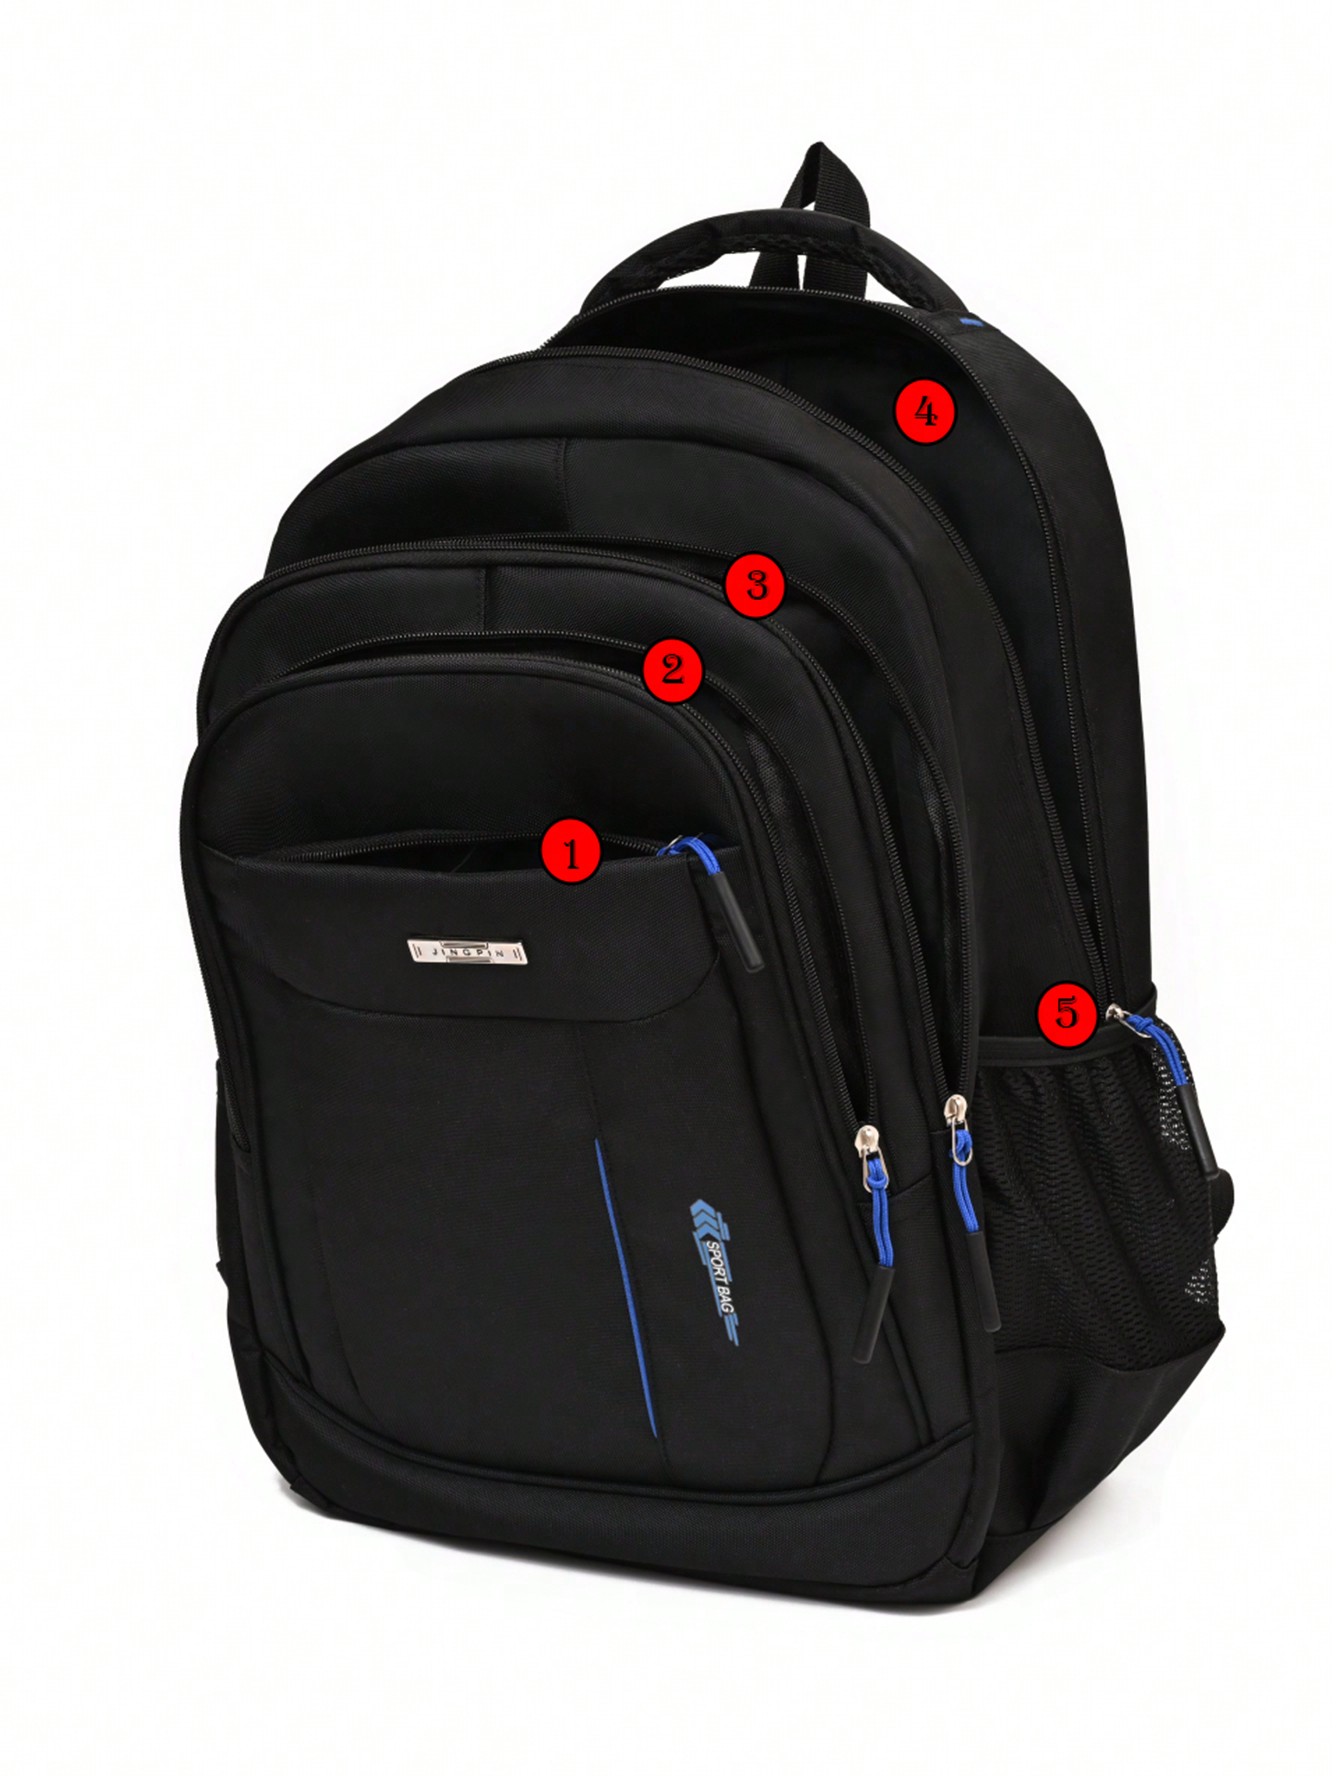 Усиленная водонепроницаемая сумка большой вместимости, синий рюкзак со светоотражающей полосой нейлоновая школьная сумка для колледжа подростков спортивный дорожный рюкзак студенческий рюкзак